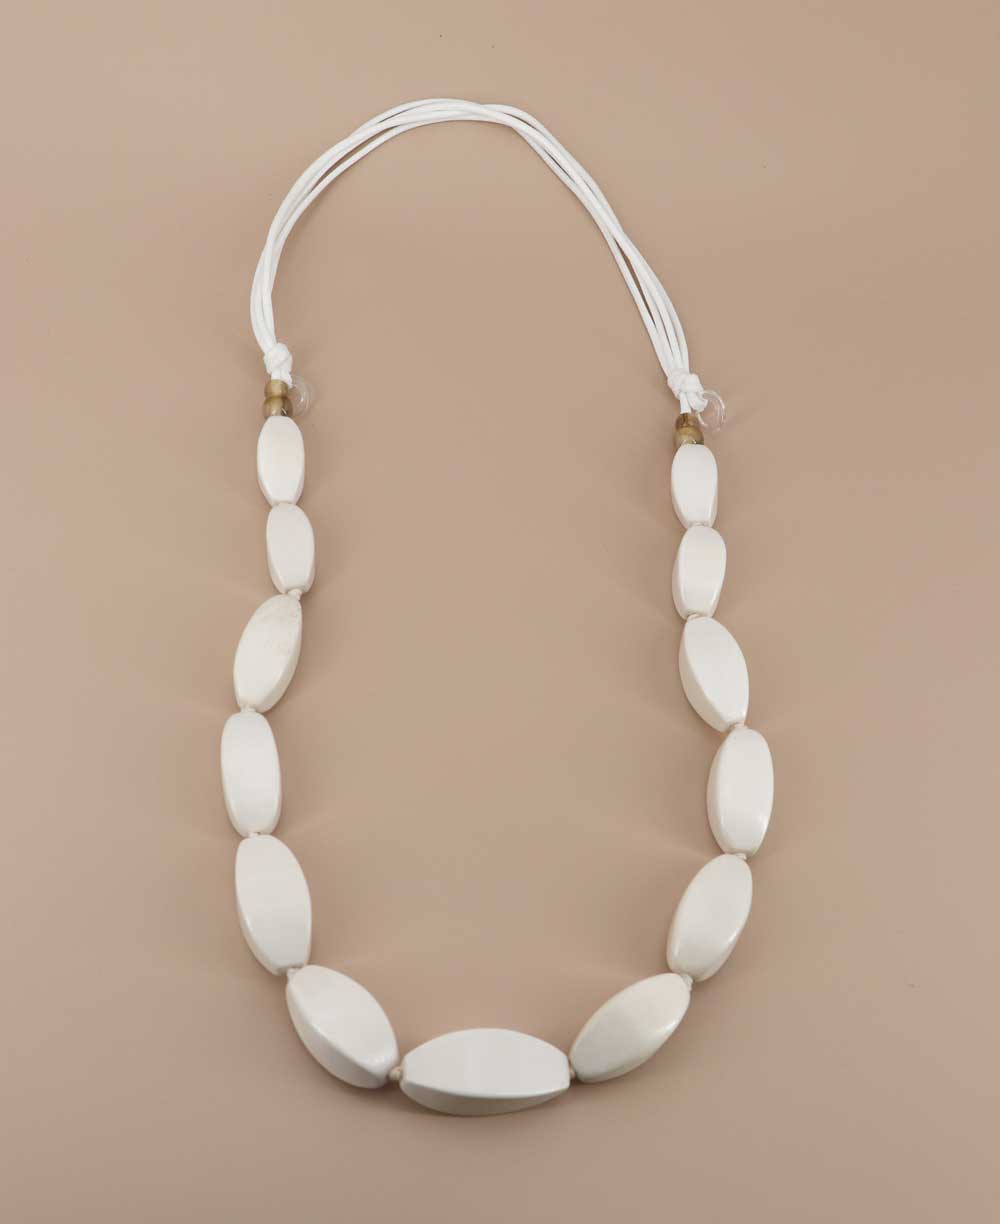 soft white elongated tube necklace